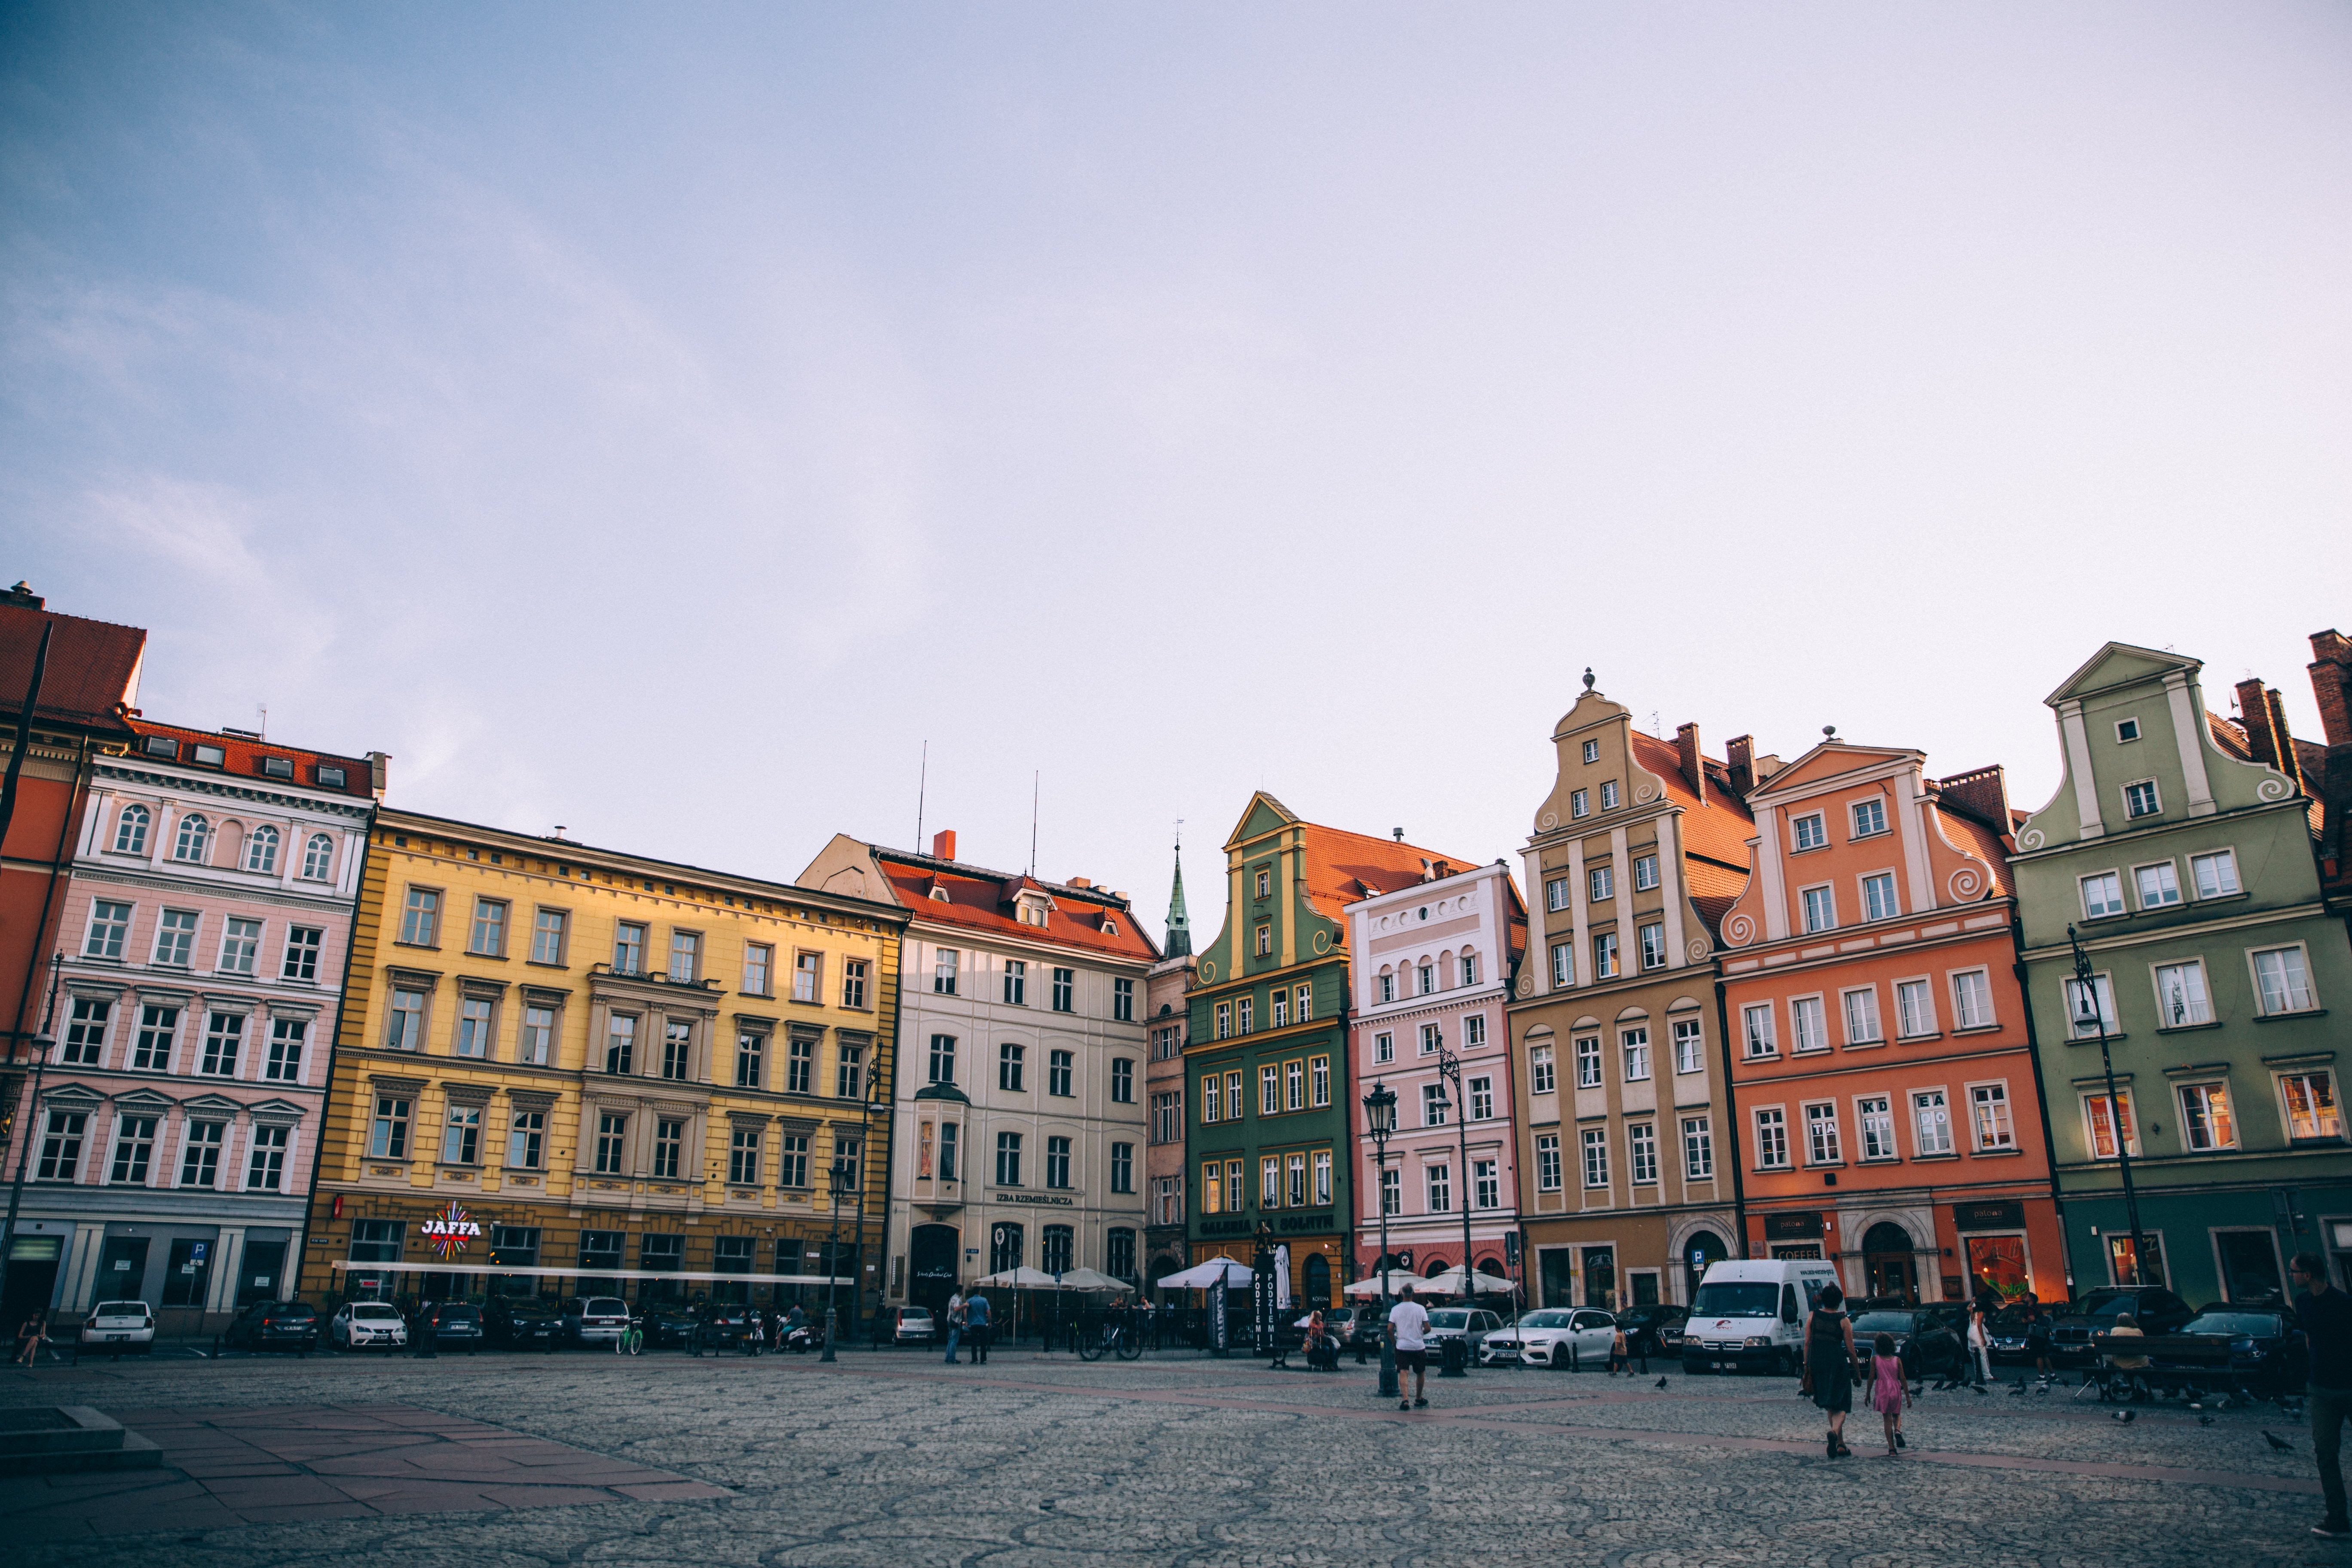 Puesta de sol en una plaza de la ciudad europea bordeada de coloridos edificios Foto 